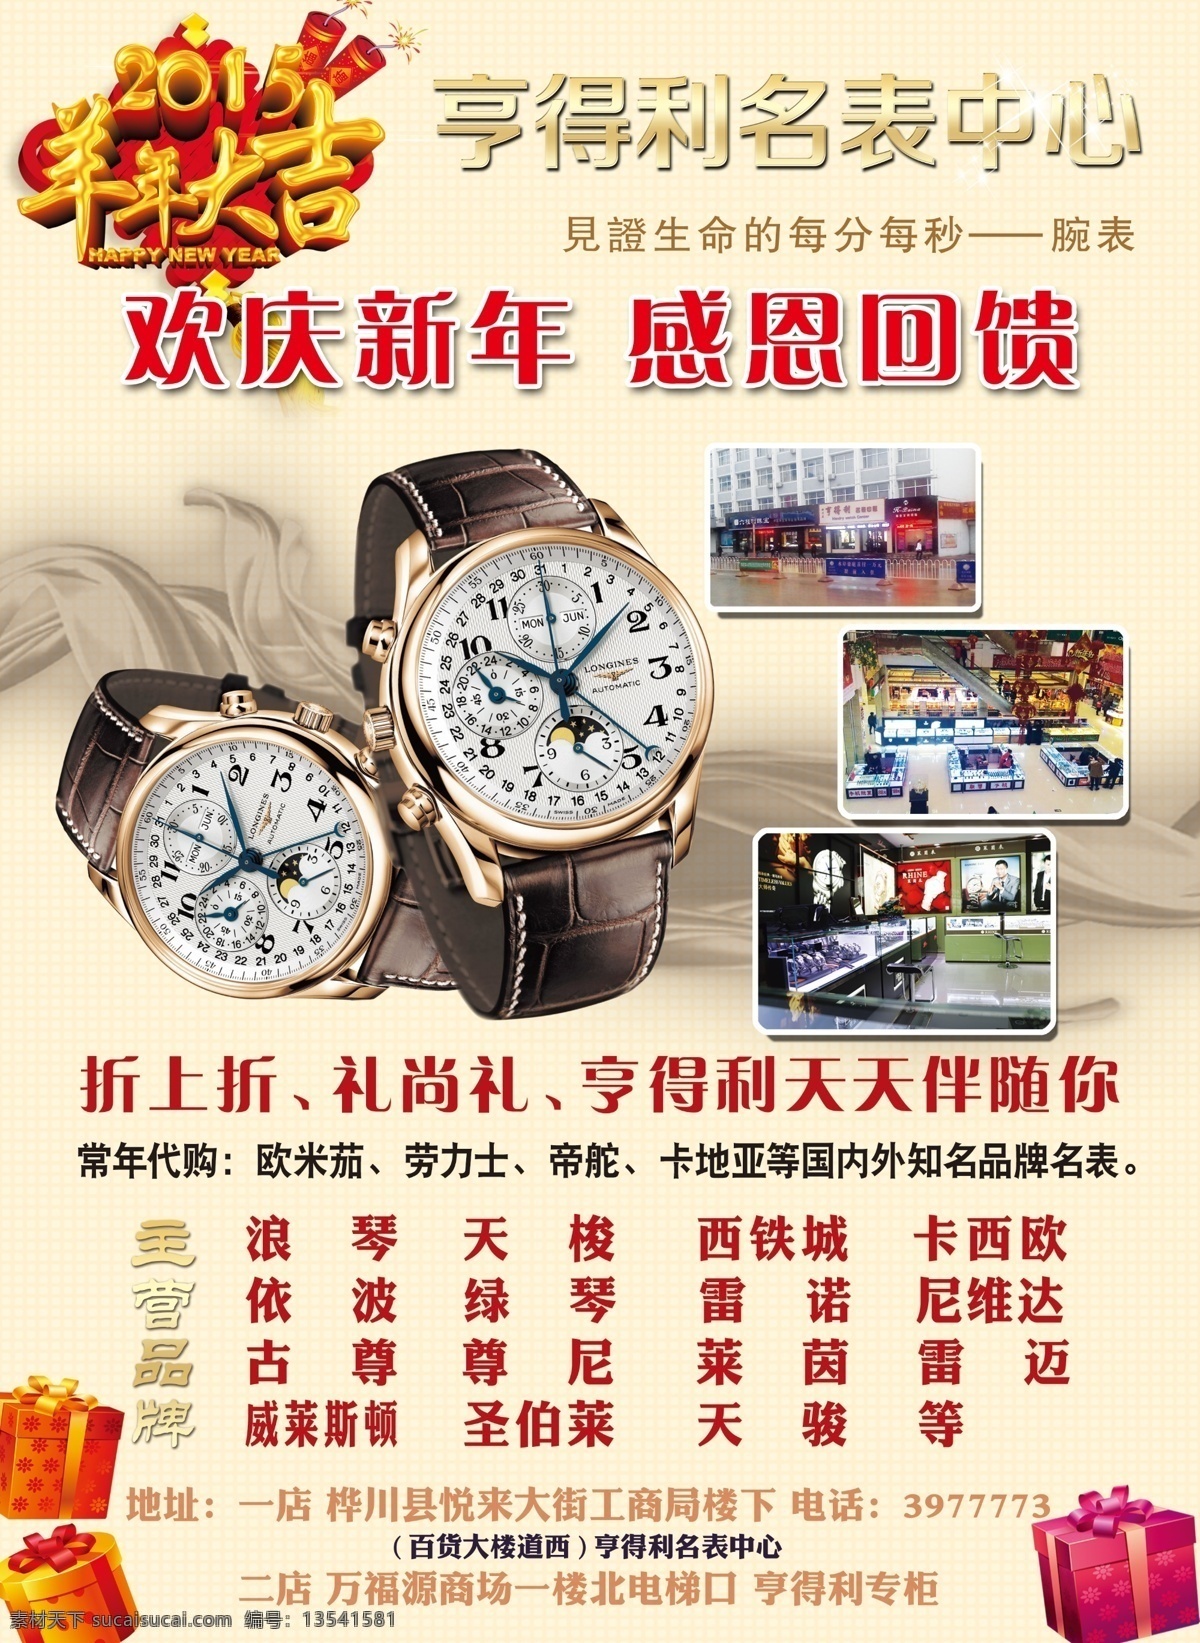 亨得利 彩页 dm dm宣传单 米色 手表 宣传单 羊年 海报 宣传海报